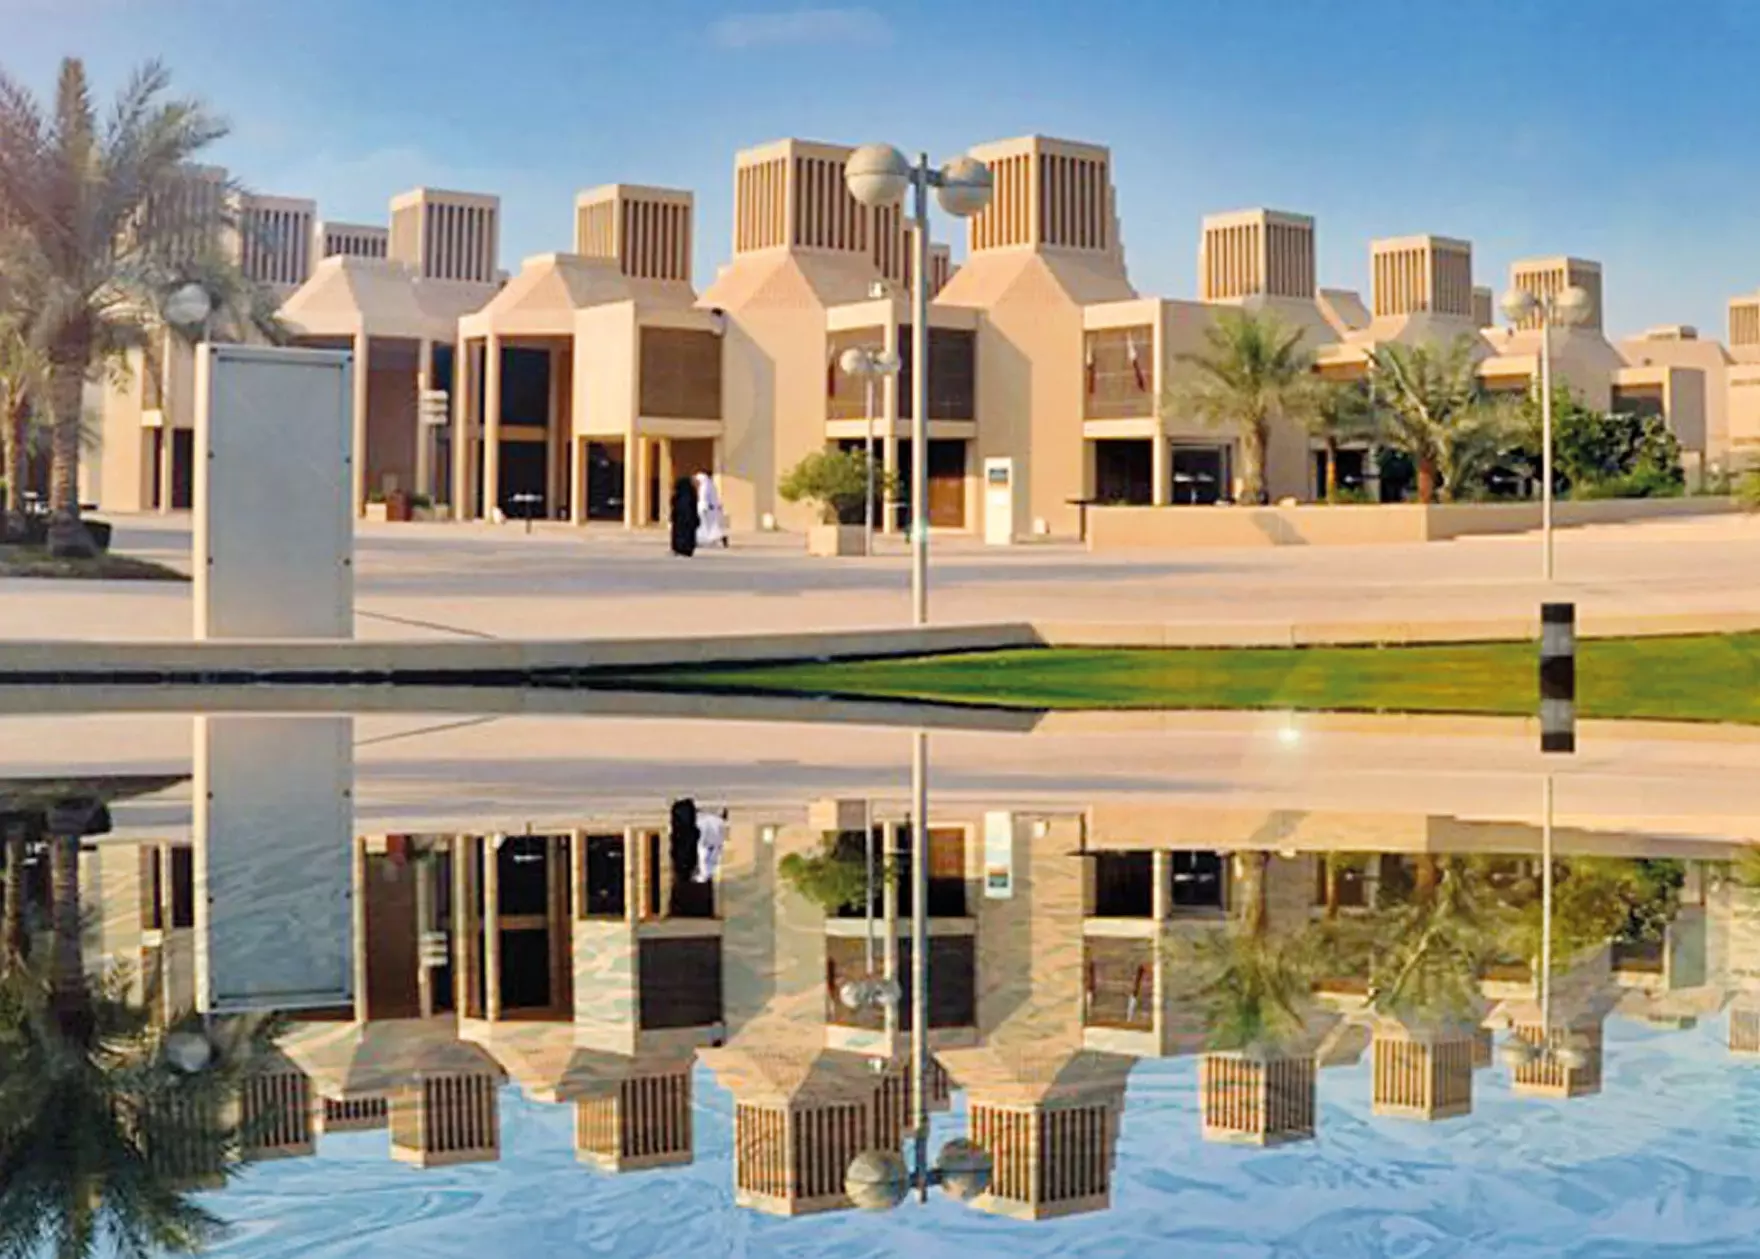 phd scholarship qatar university